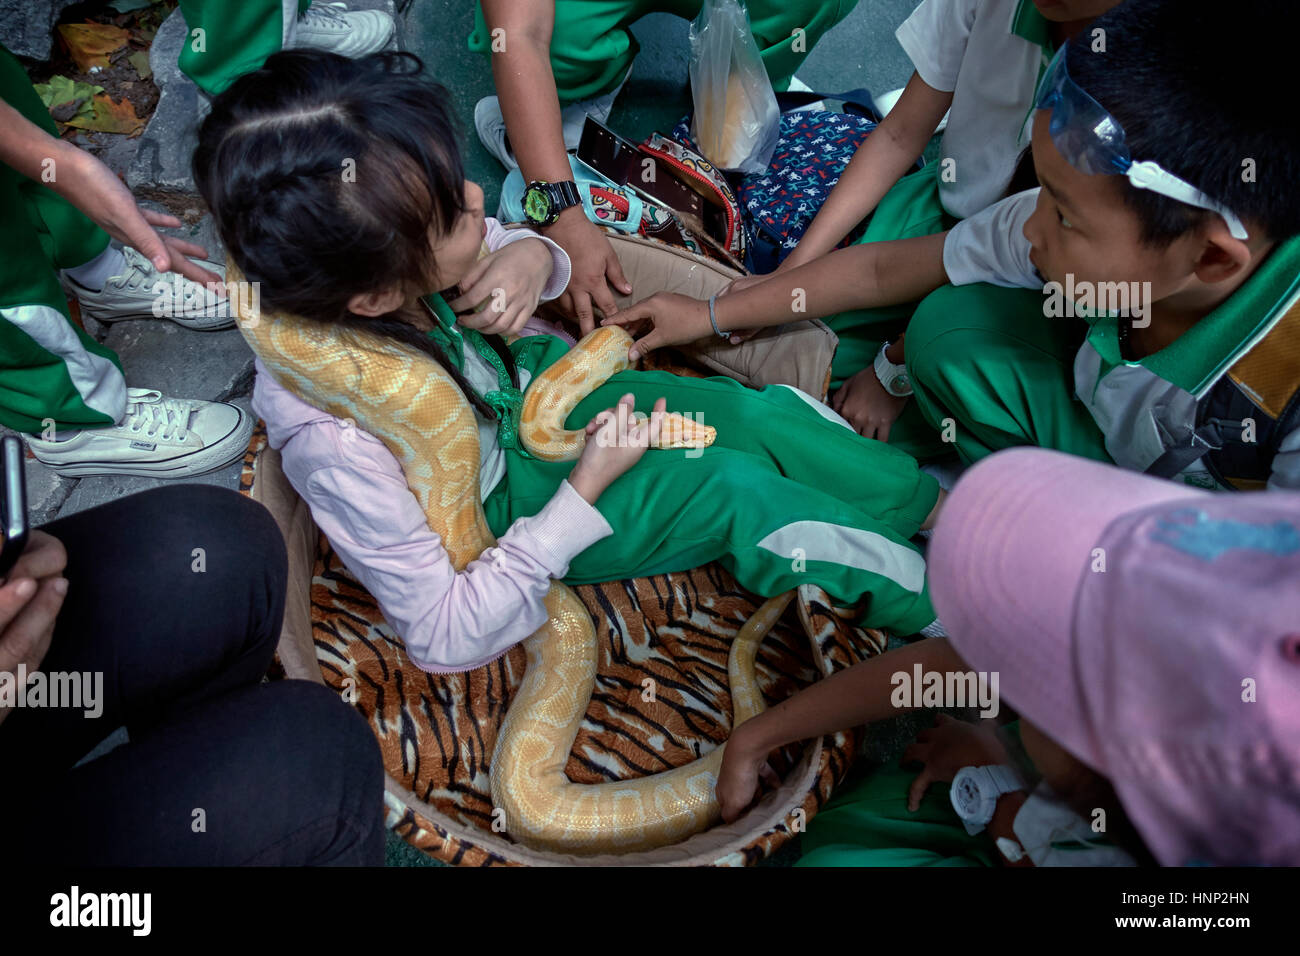 Manipulación de serpientes infantiles. Niños de escuela en una naturaleza científica días de descubrimiento de la salida manejando una gran serpiente Python. Tailandia, sudeste asiático Foto de stock